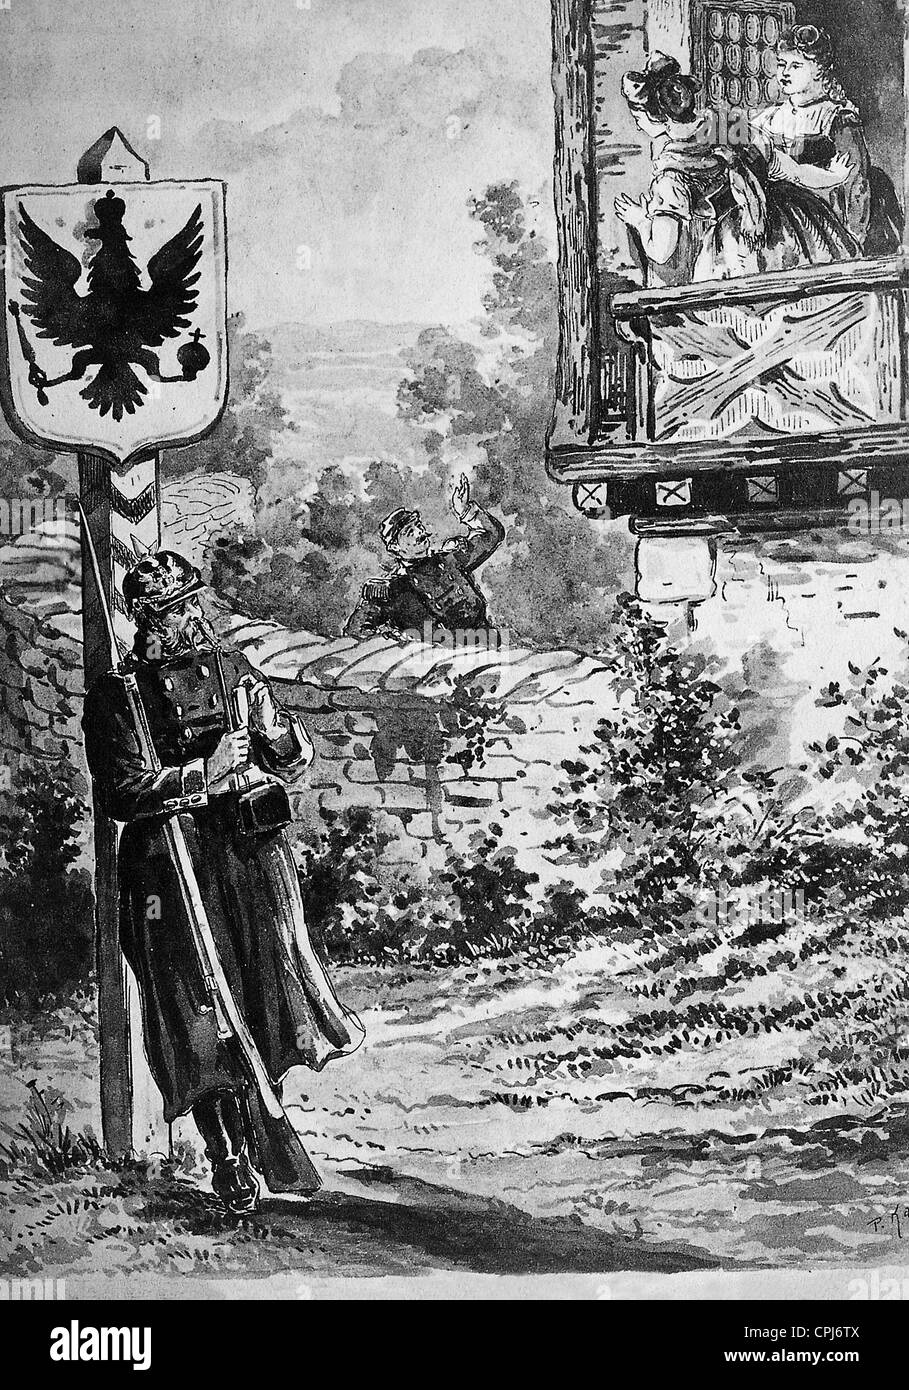 Se moquant de la volonté de la France sur la carte pour l'Alsace Lorraine, 1871 Banque D'Images